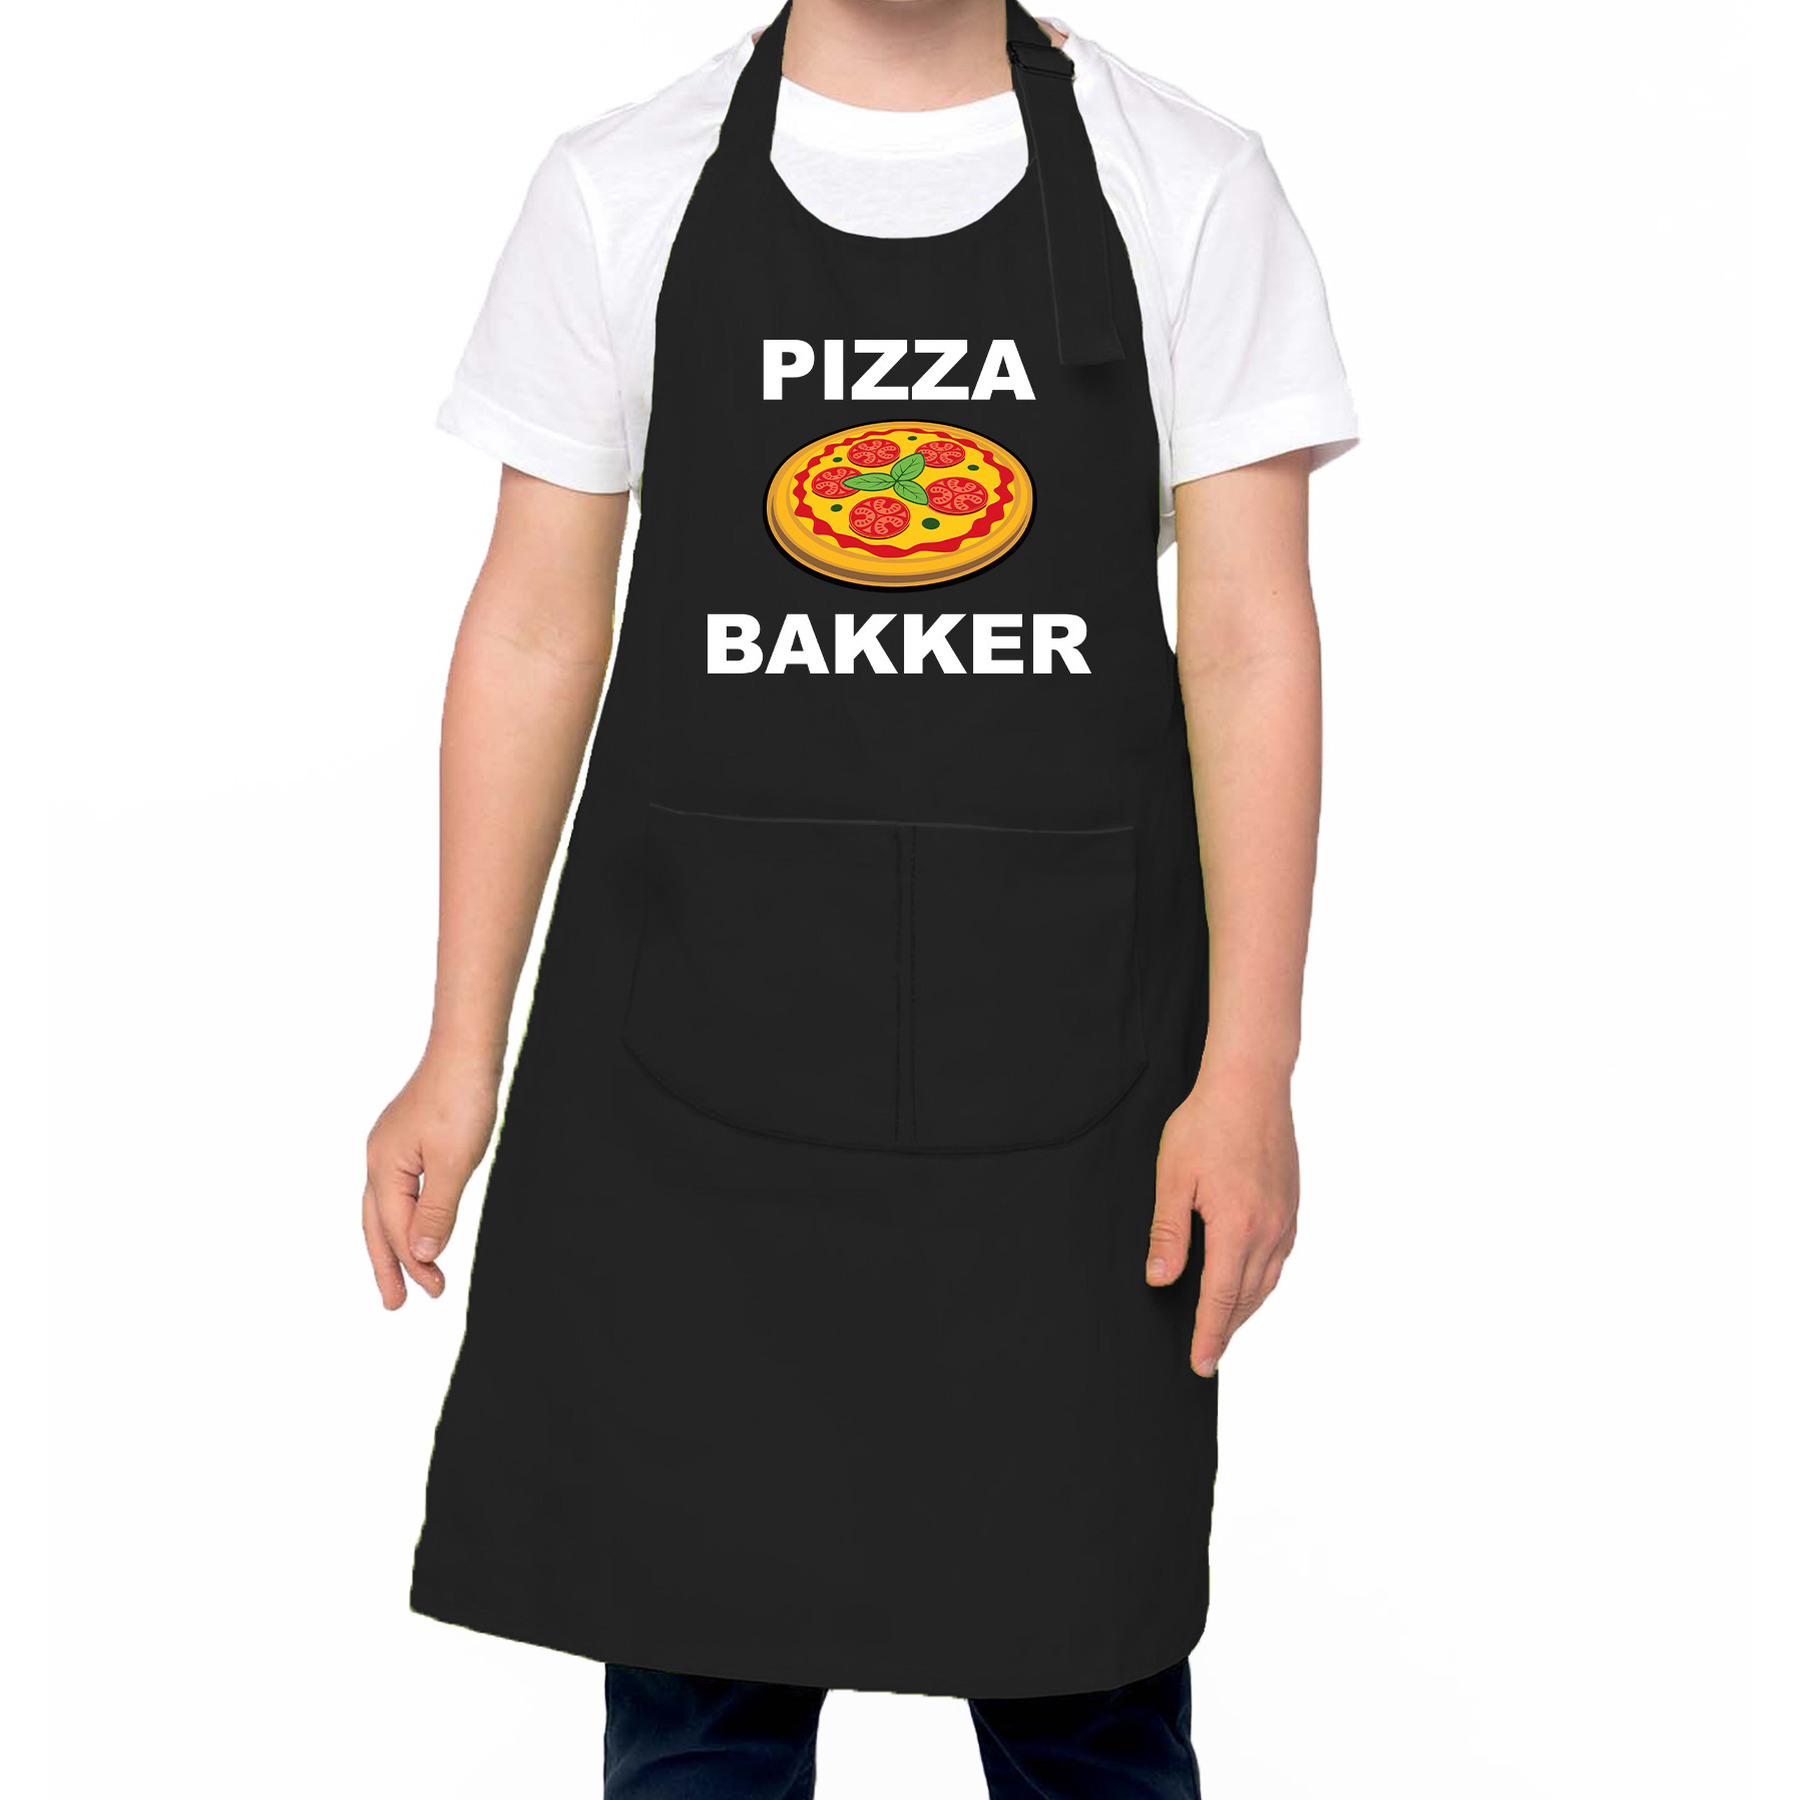 Pizza bakker schort- keukenschort zwart voor jongens en meisjes Bakken met kinderen